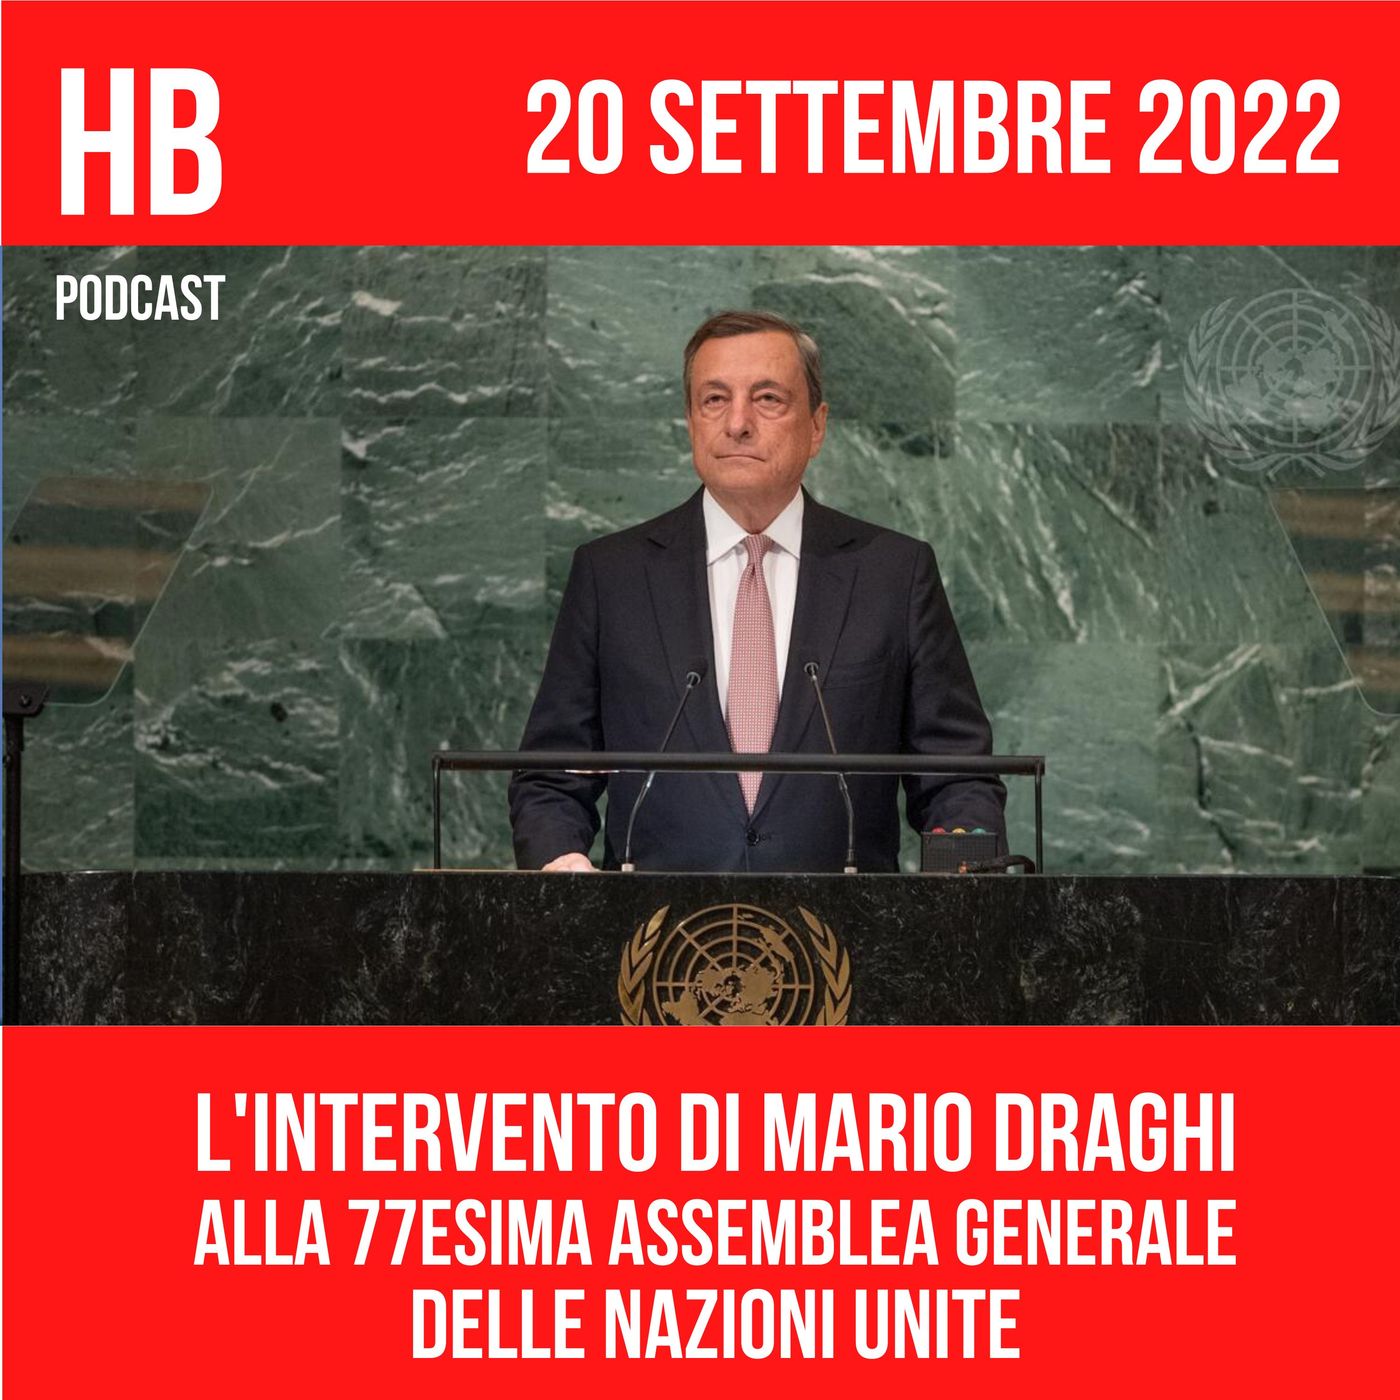 L'intervento di Mario Draghi alla 77esima Assemblea Generale delle Nazioni Unite